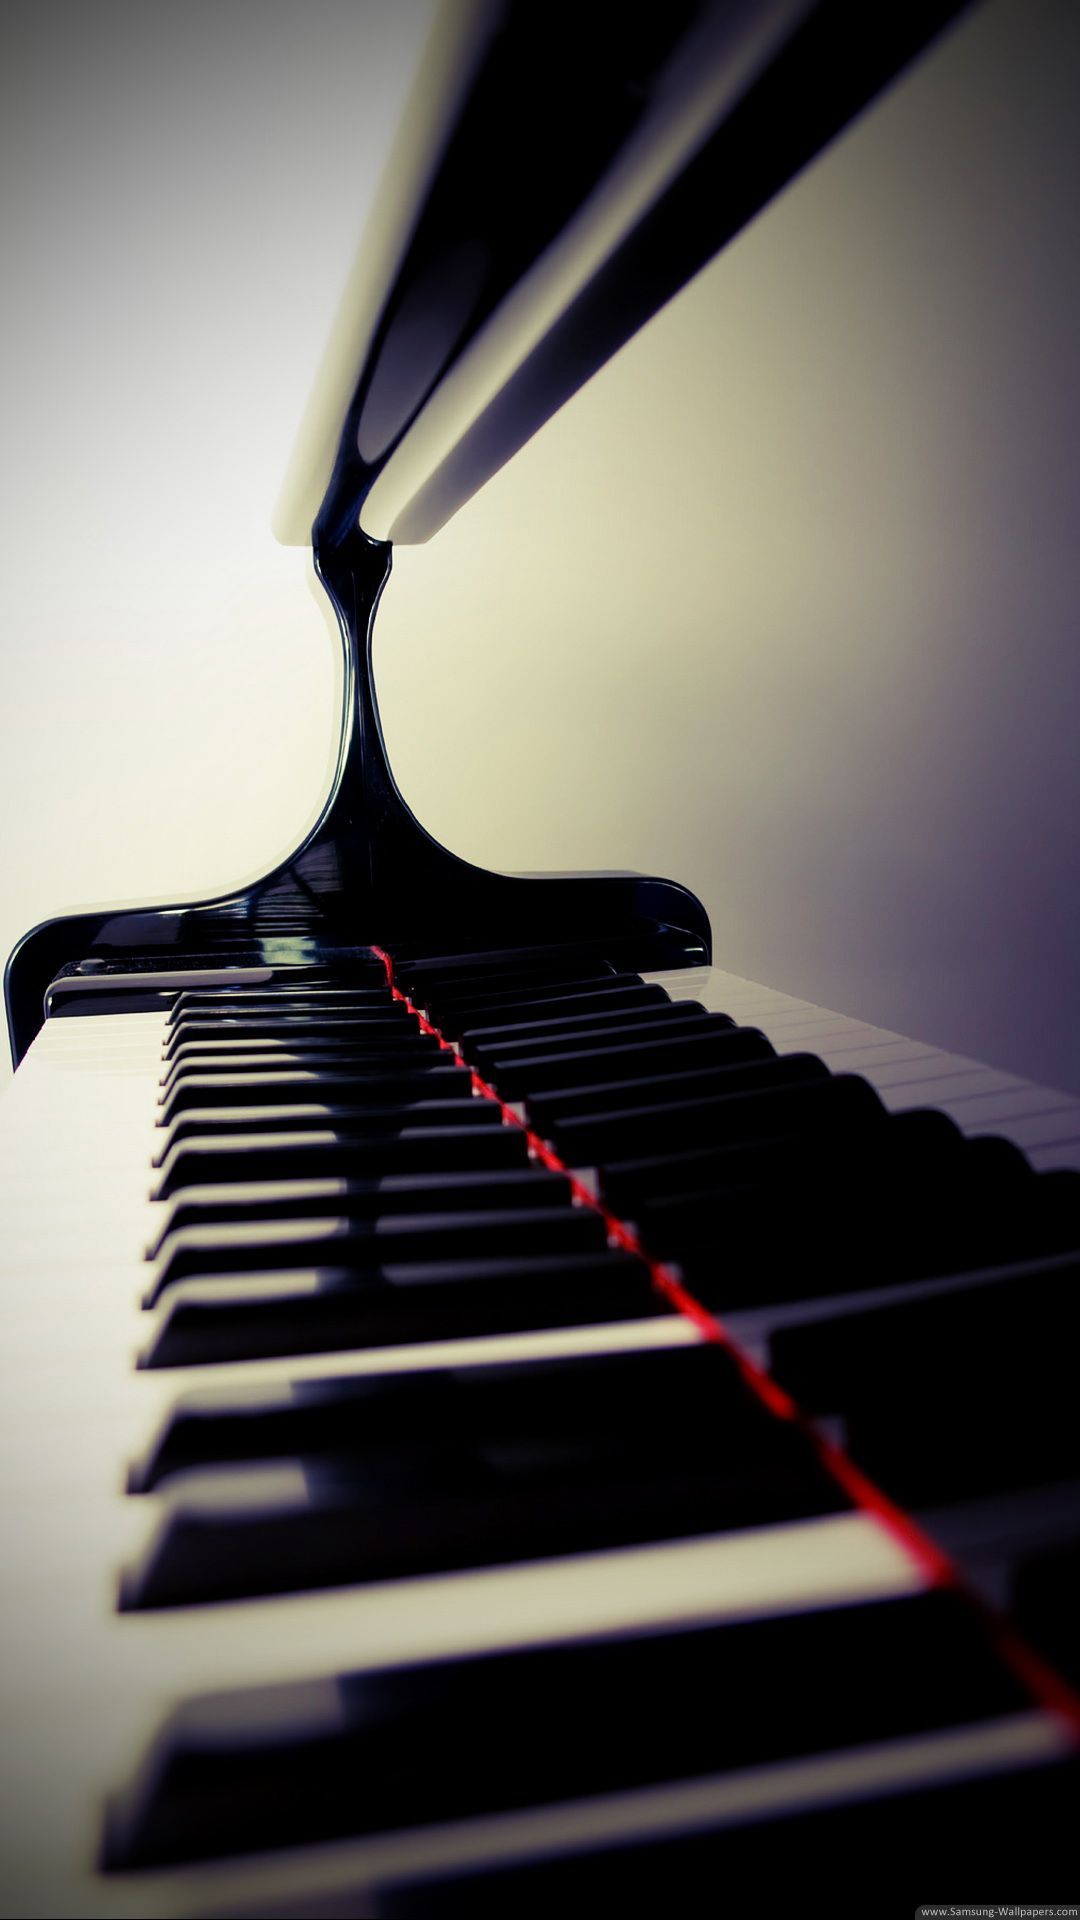 A close up of a piano keyboard - Piano